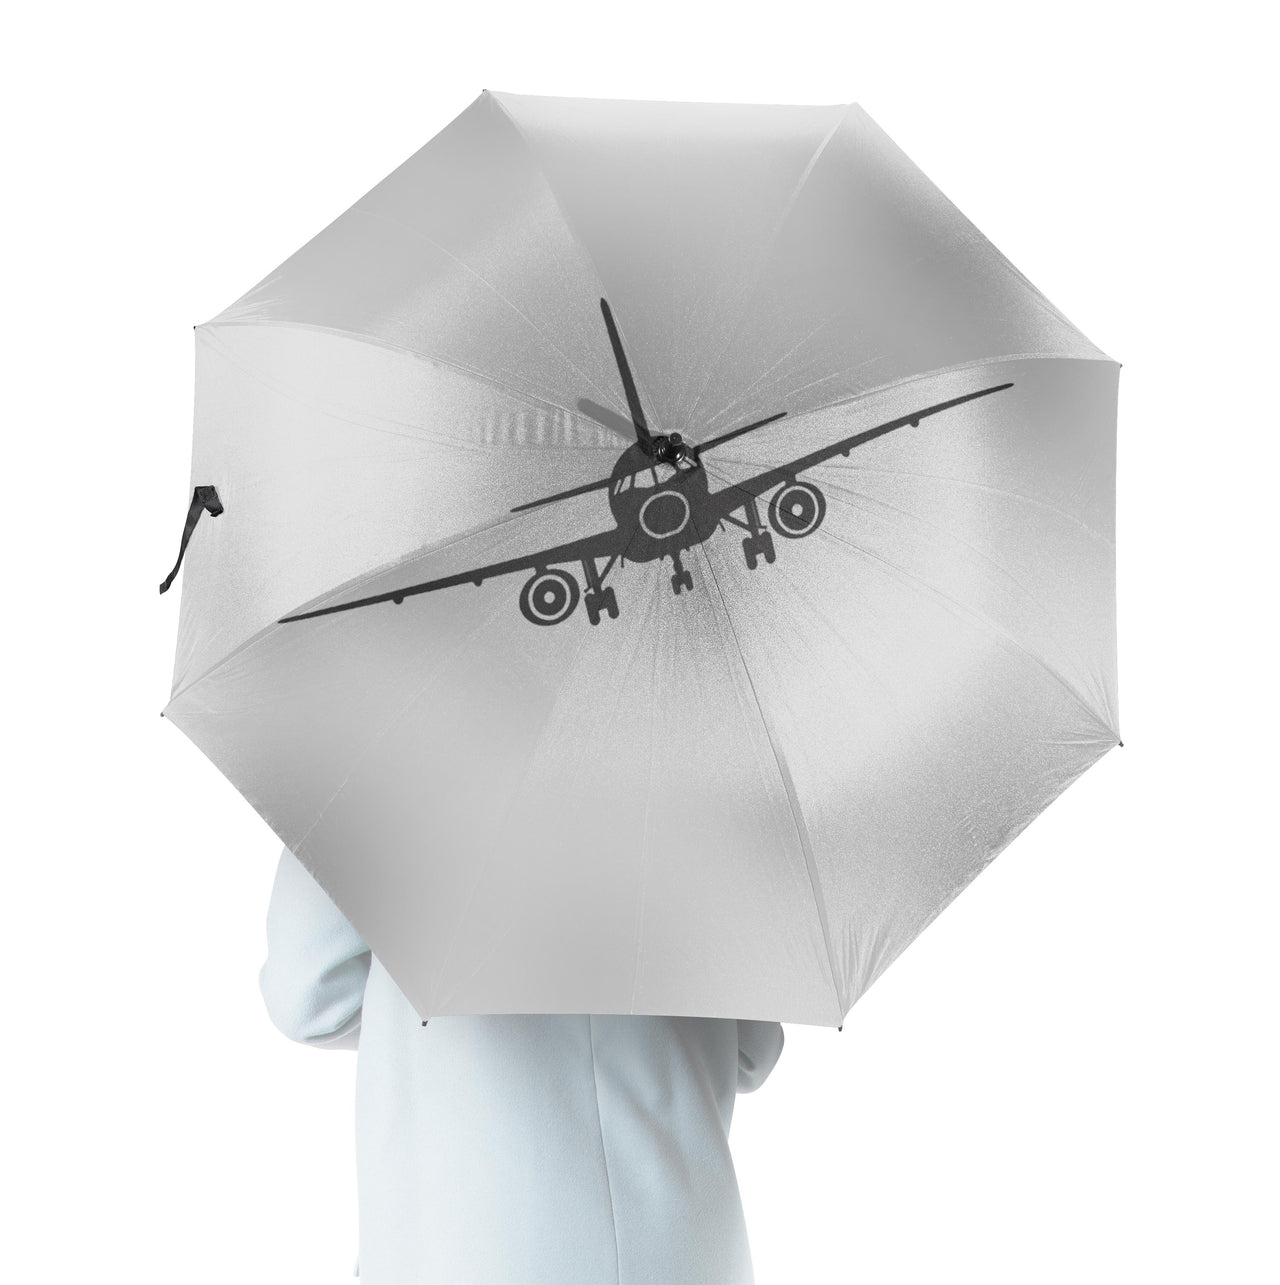 Sukhoi Superjet 100 Silhouette Designed Umbrella